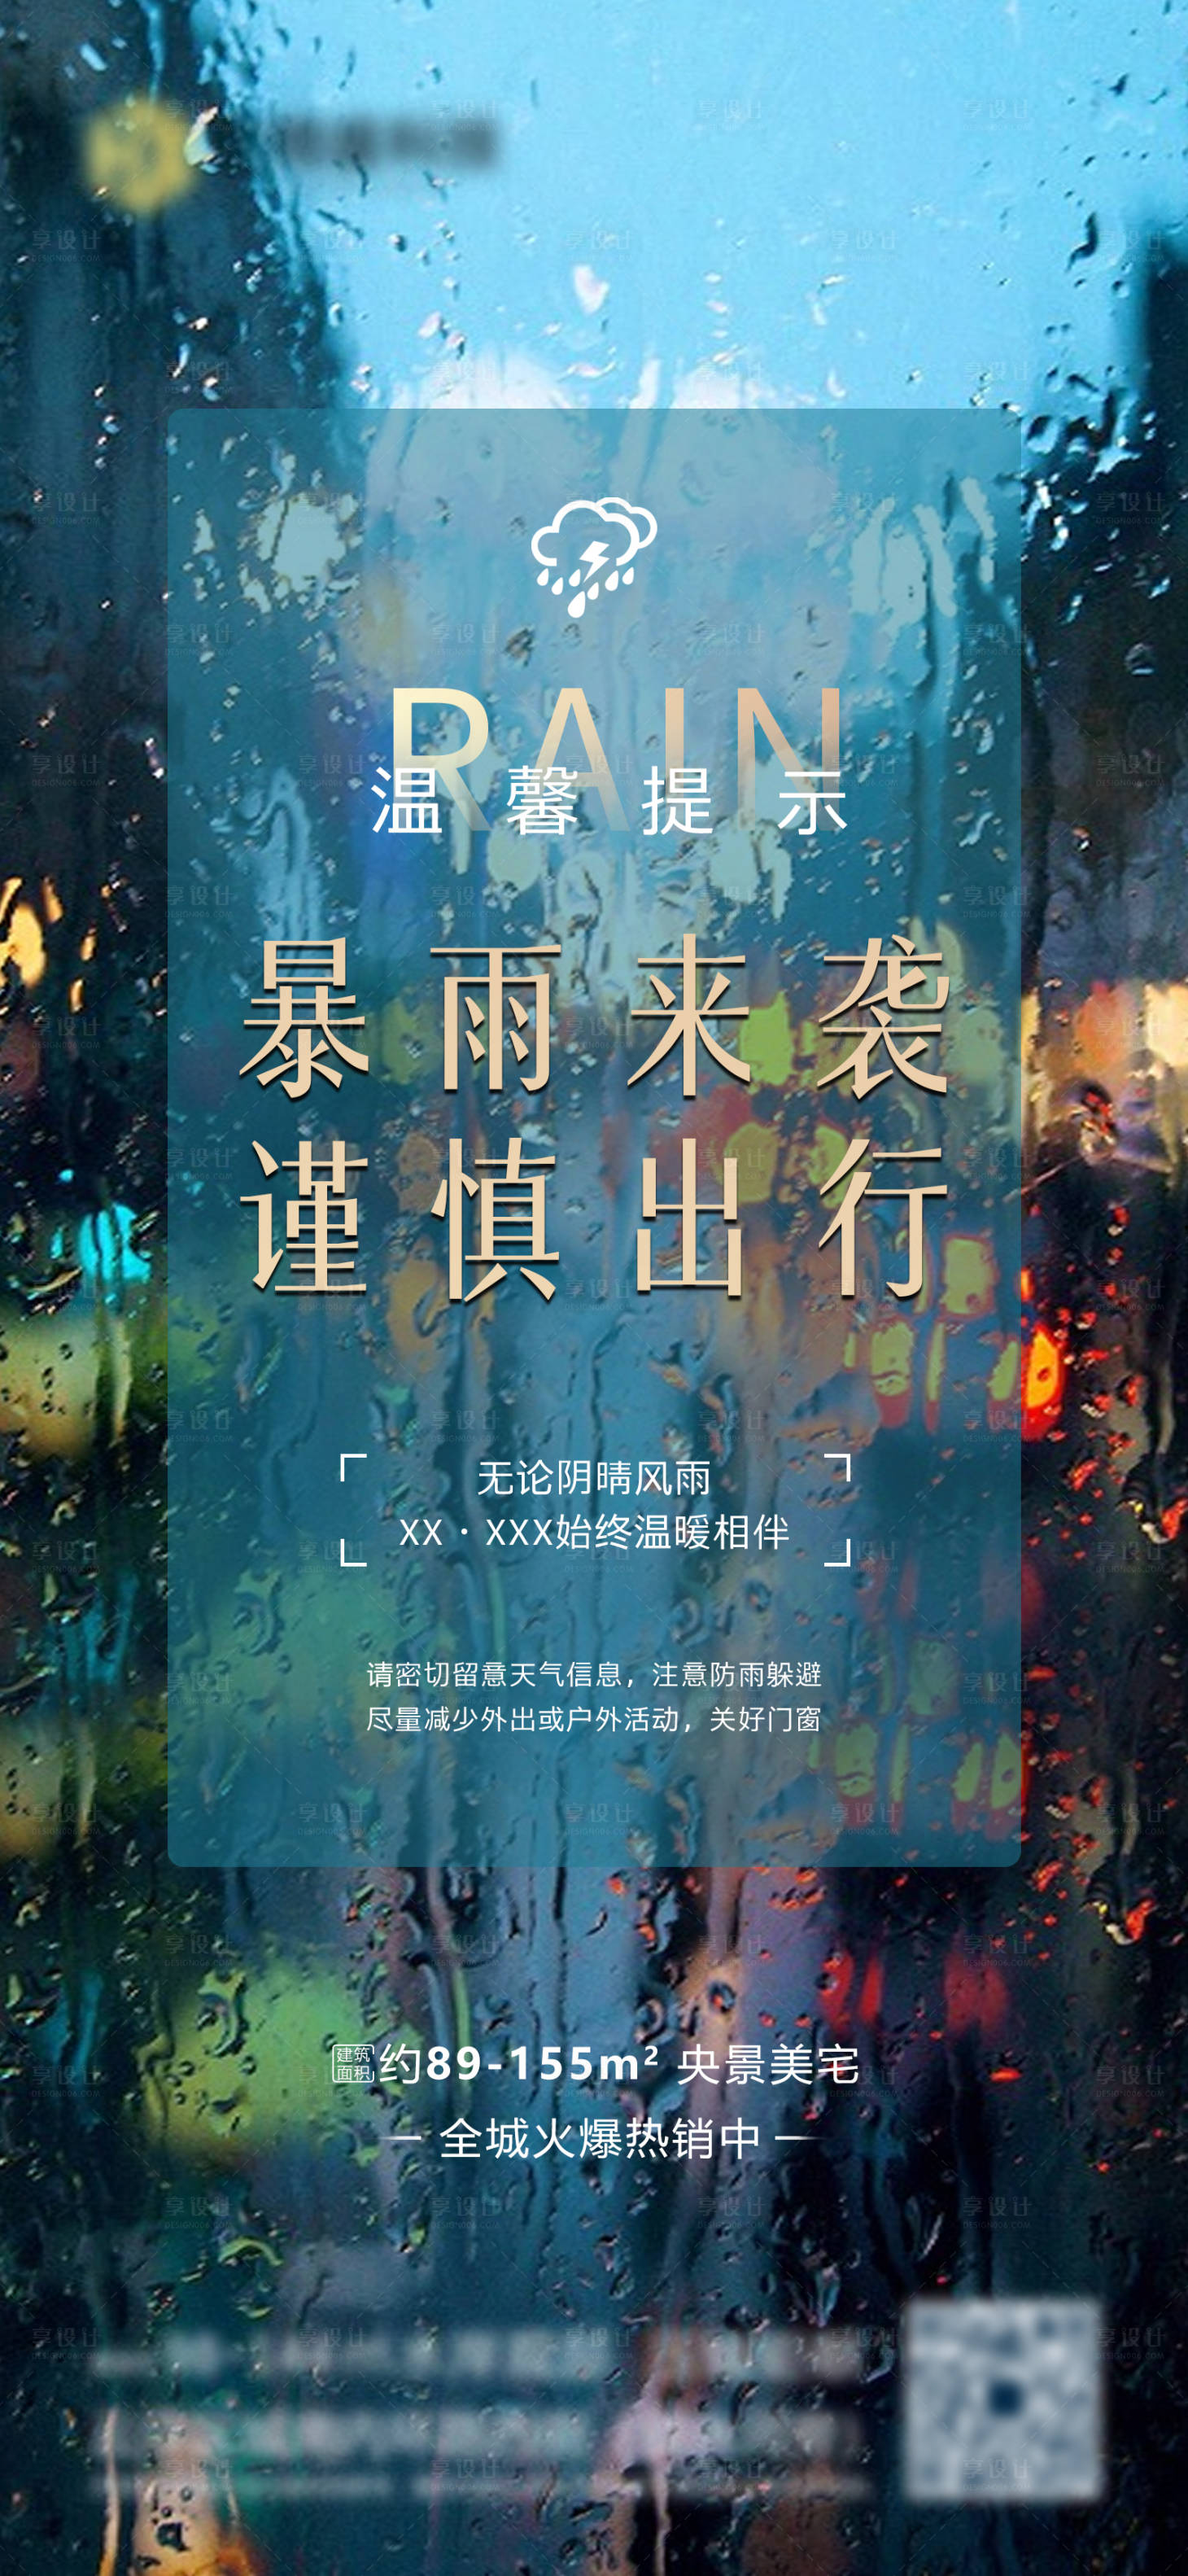 雨天温馨提示AI广告设计素材海报模板免费下载-享设计